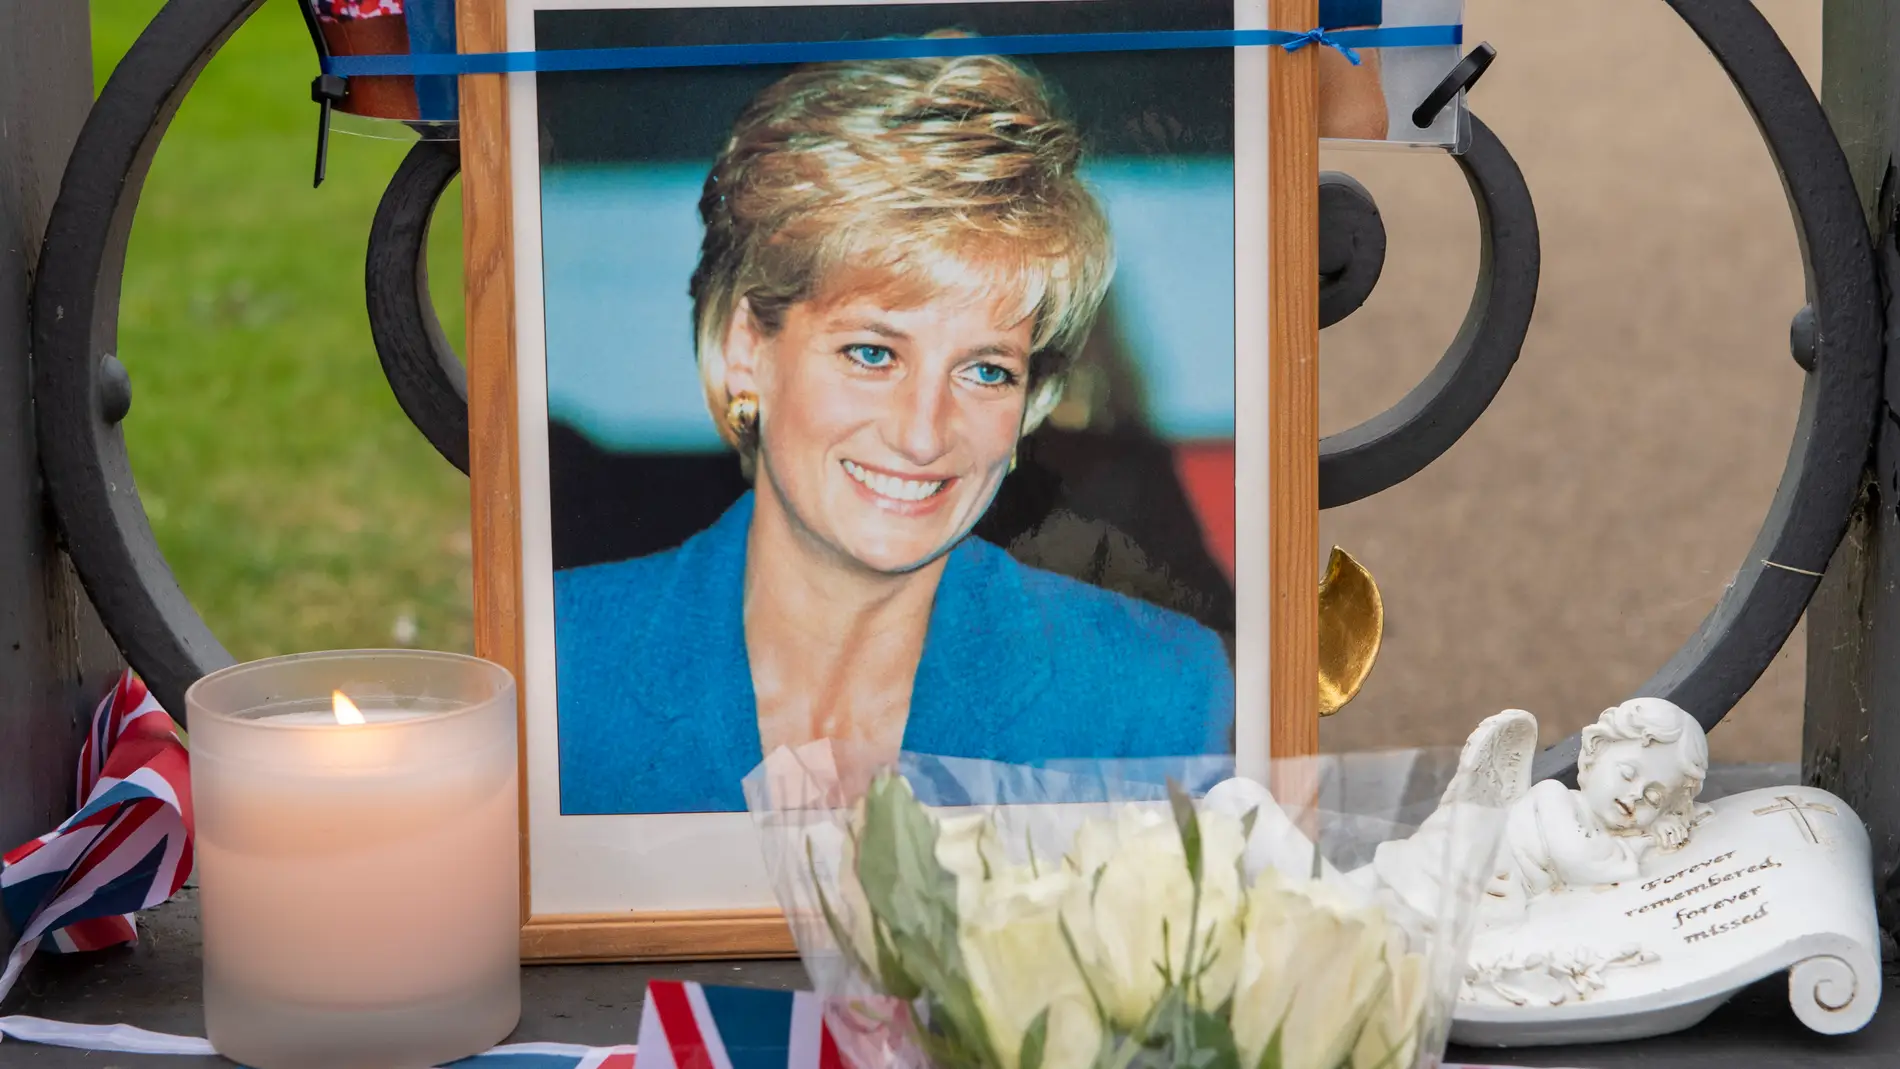 Homenaje a la princesa Diana en el aniversario de su muerte